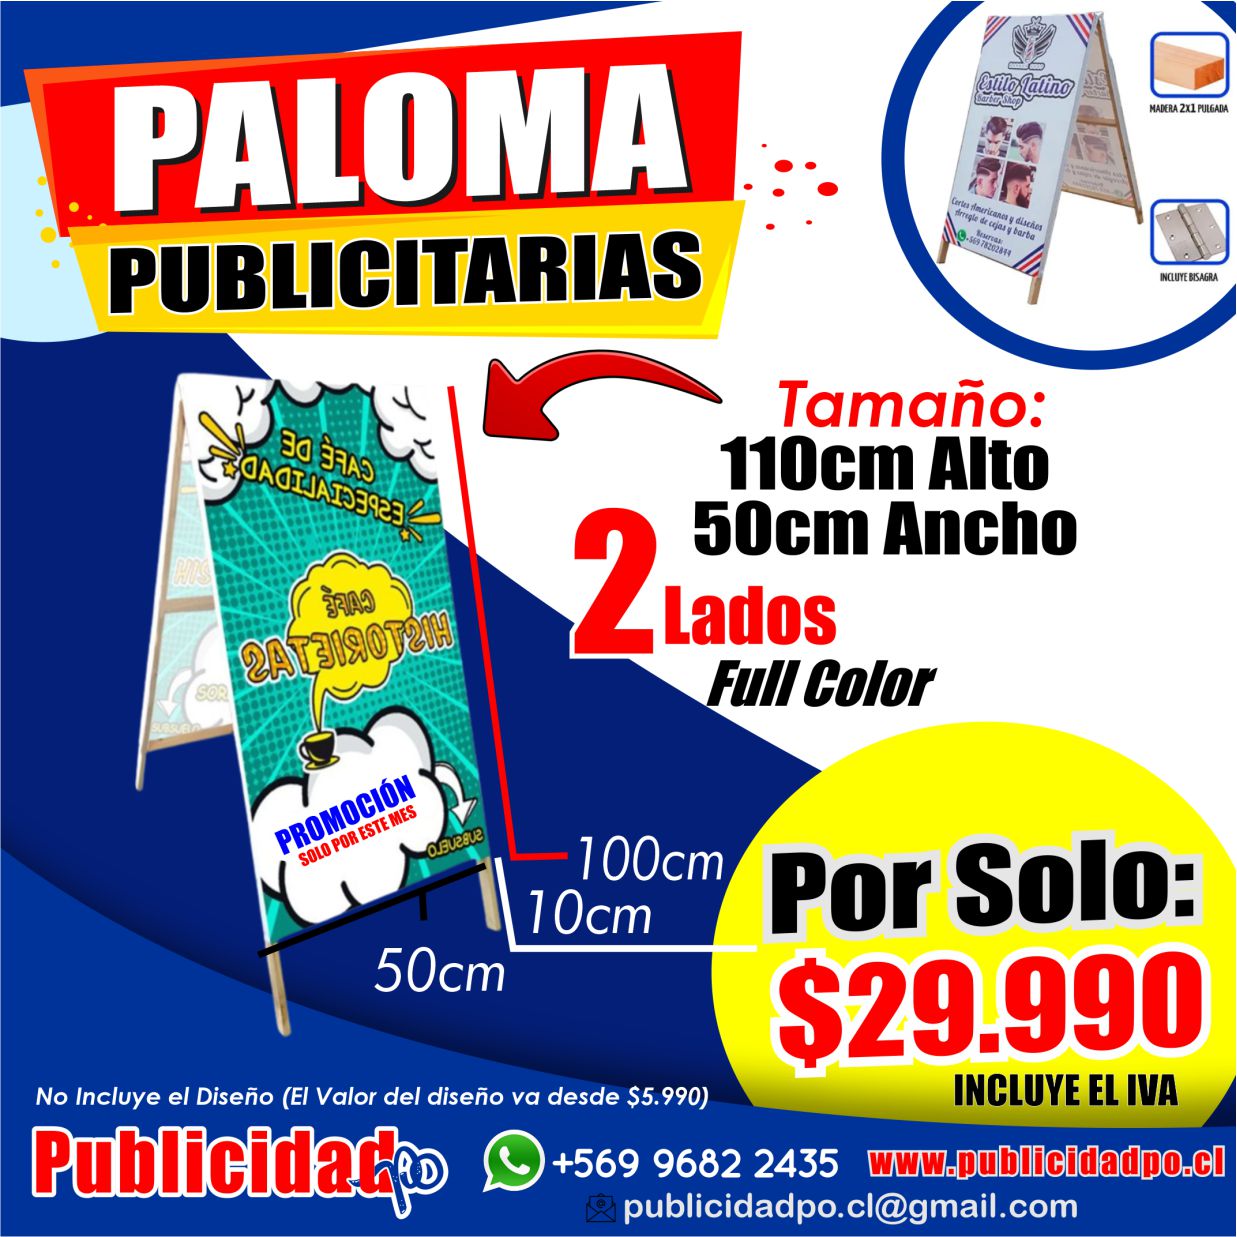 Paloma Publicitaria